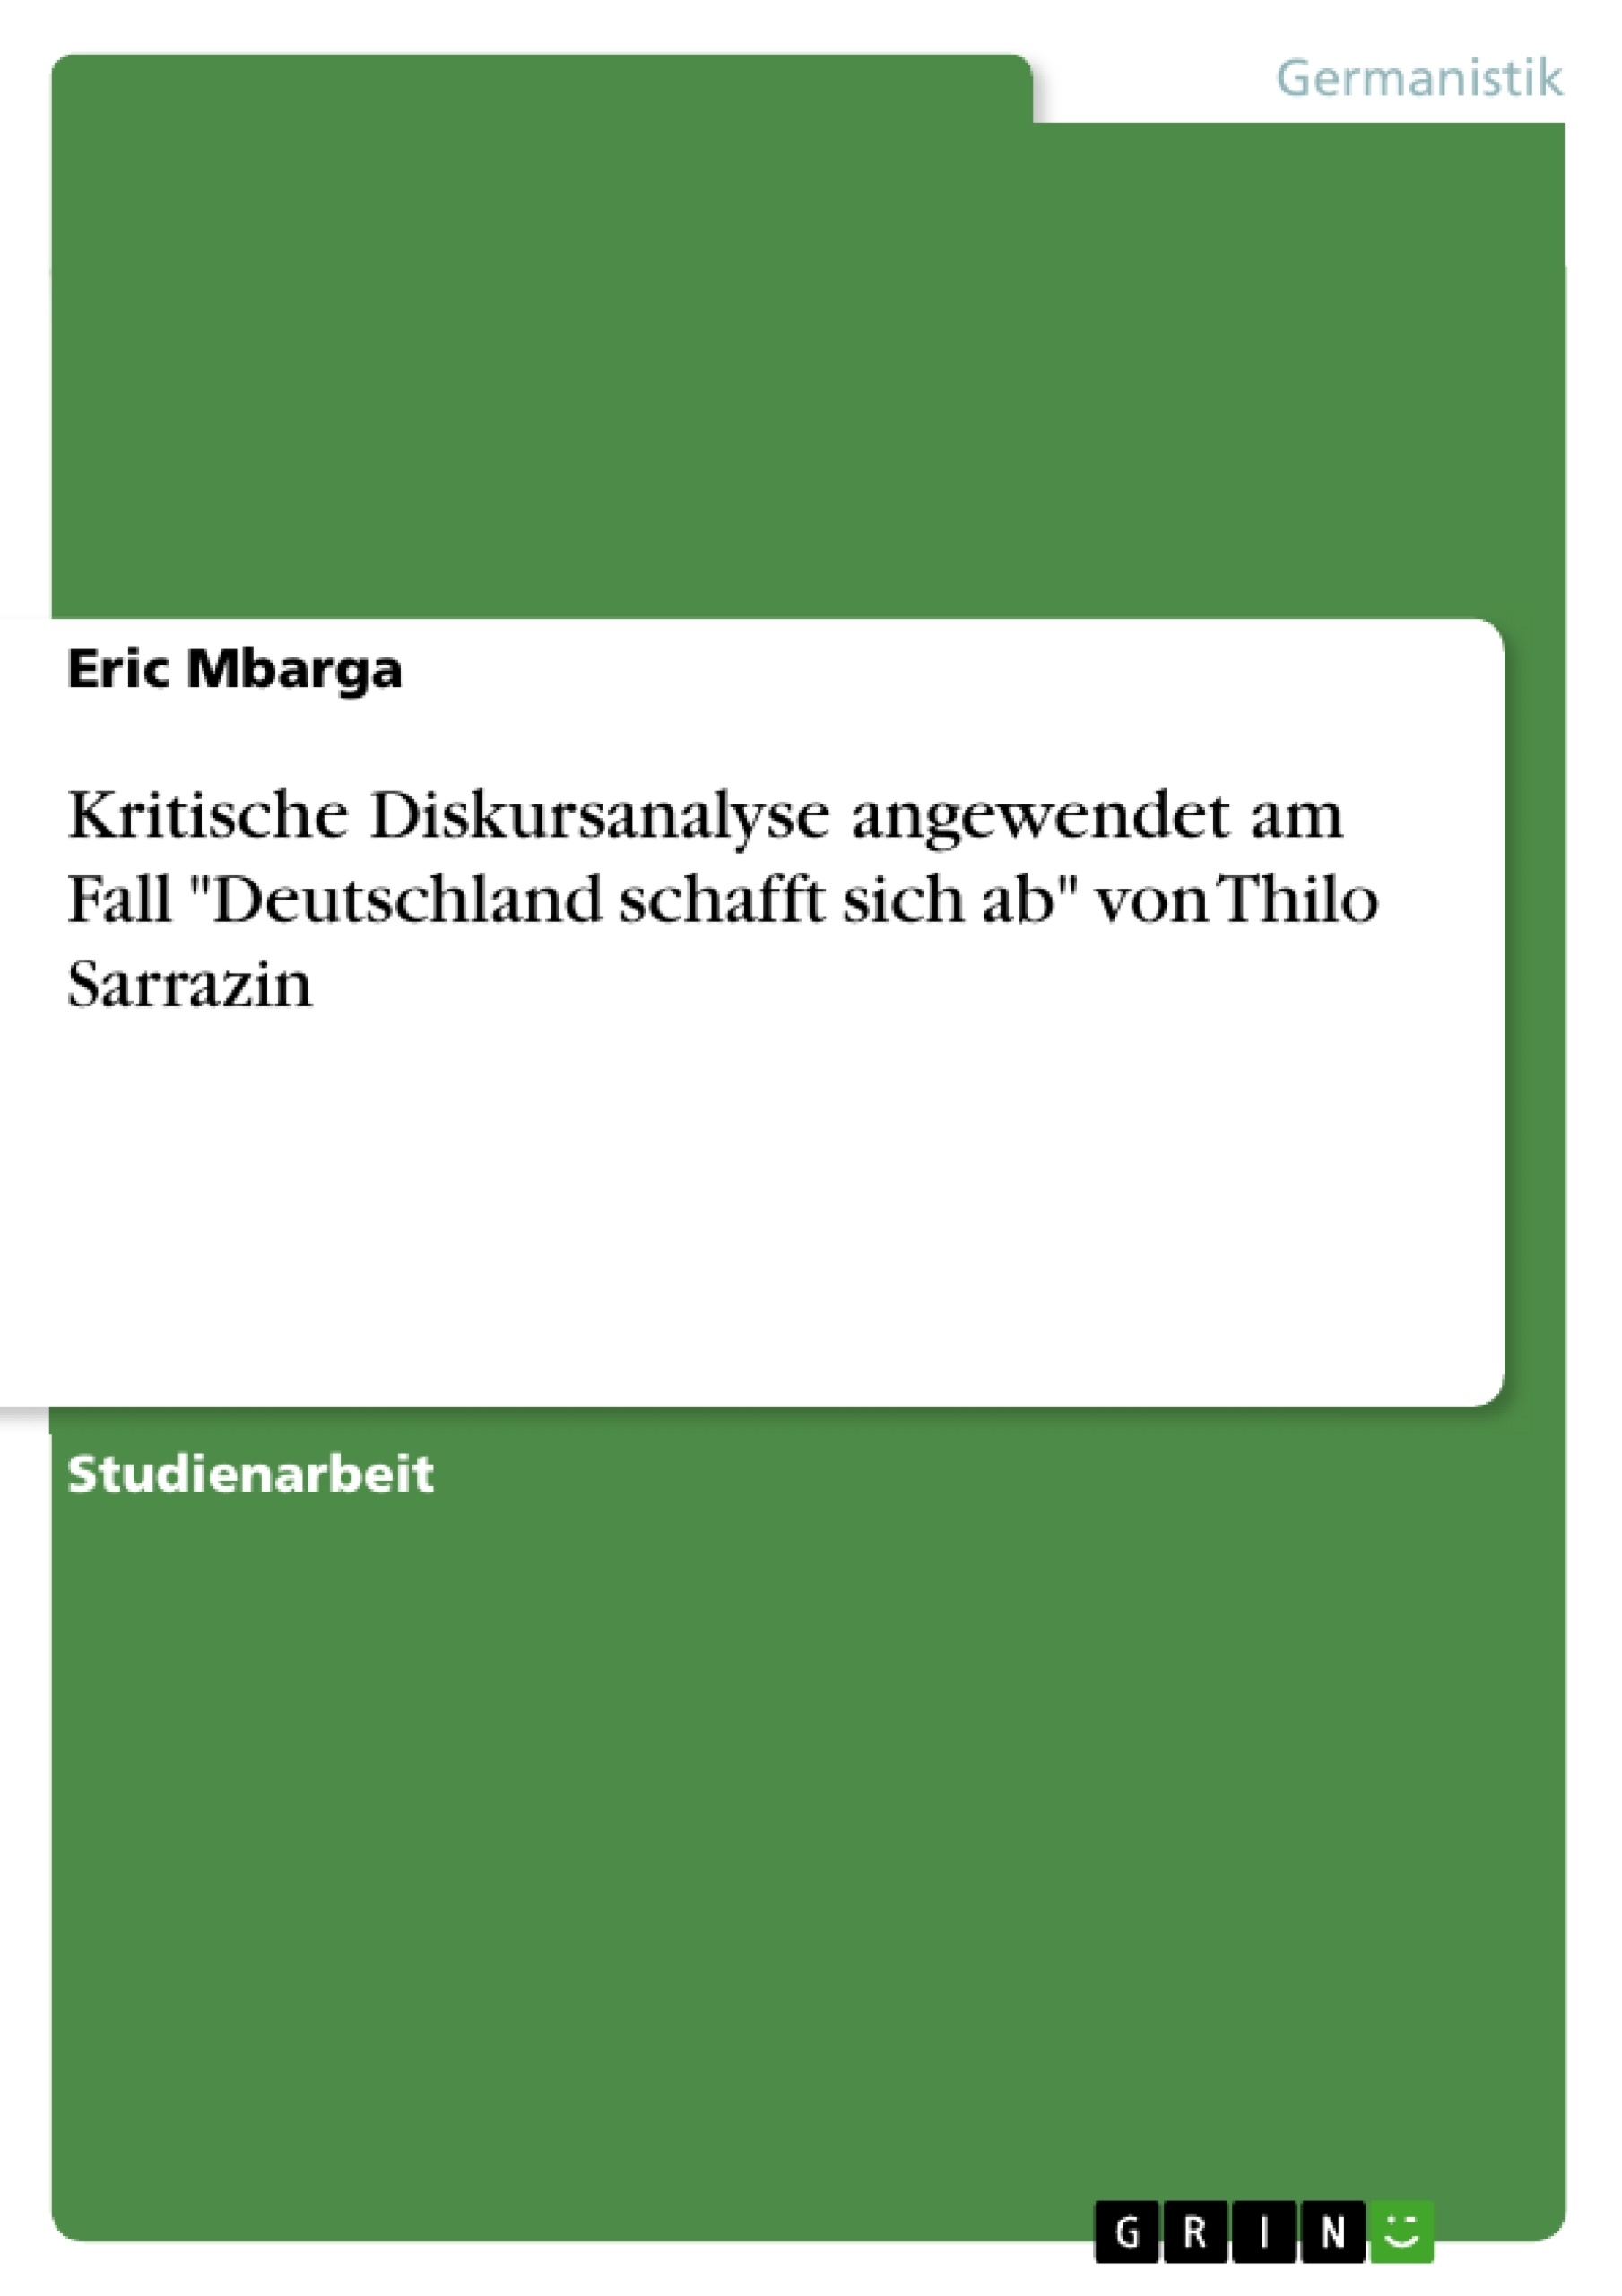 Title: Kritische Diskursanalyse angewendet am Fall "Deutschland schafft sich ab" von Thilo Sarrazin